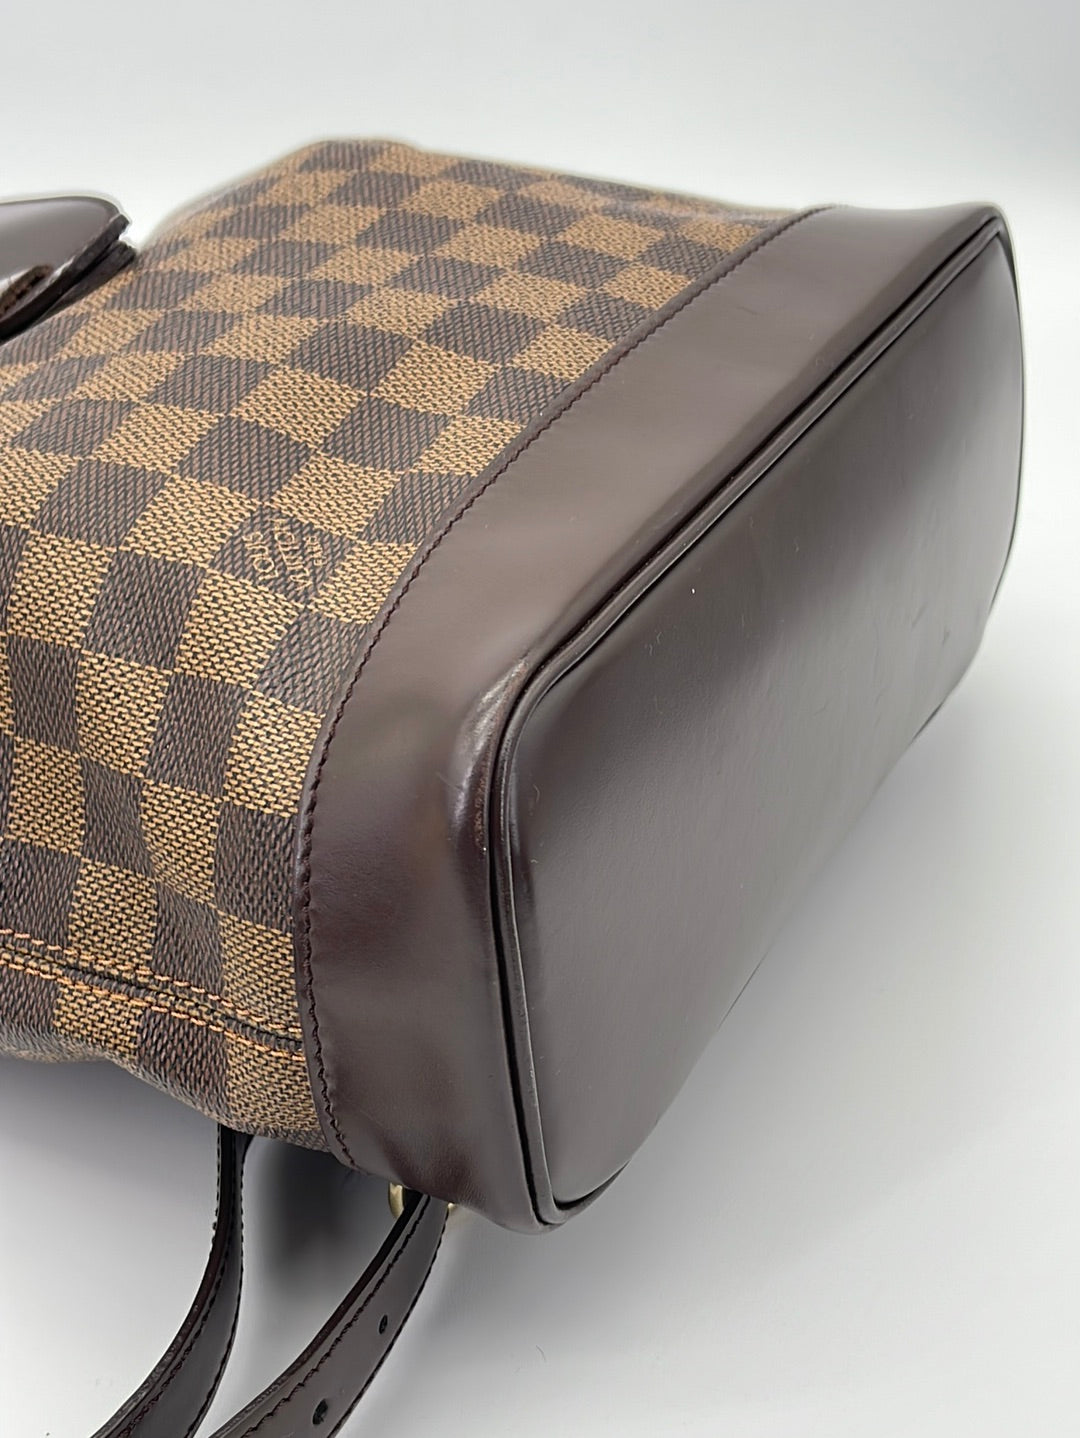 Preloved Louis Vuitton Damier Ebene Soho Backpack TH0042 081123